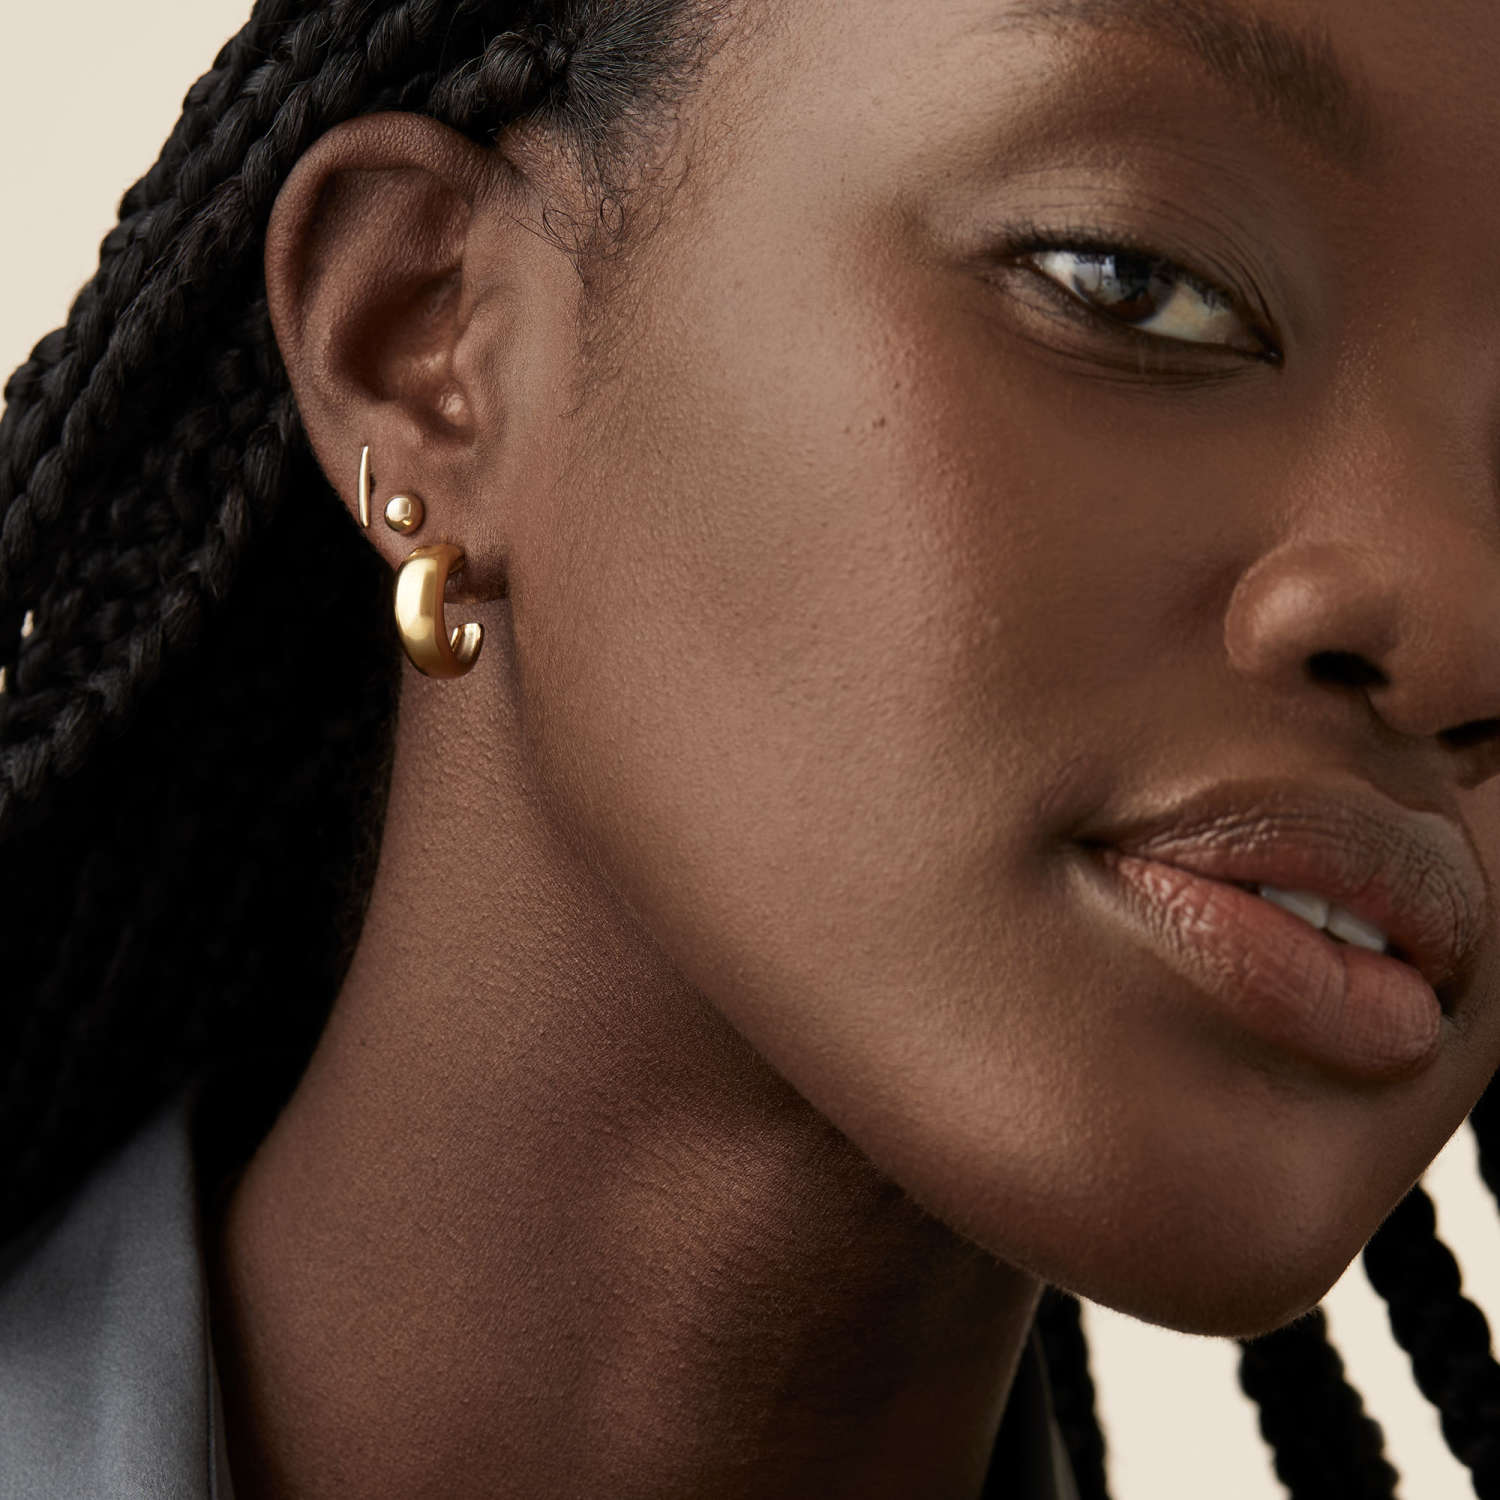 Best Earrings for Sensitive Ears 2021 — Cute Earrings That Won't